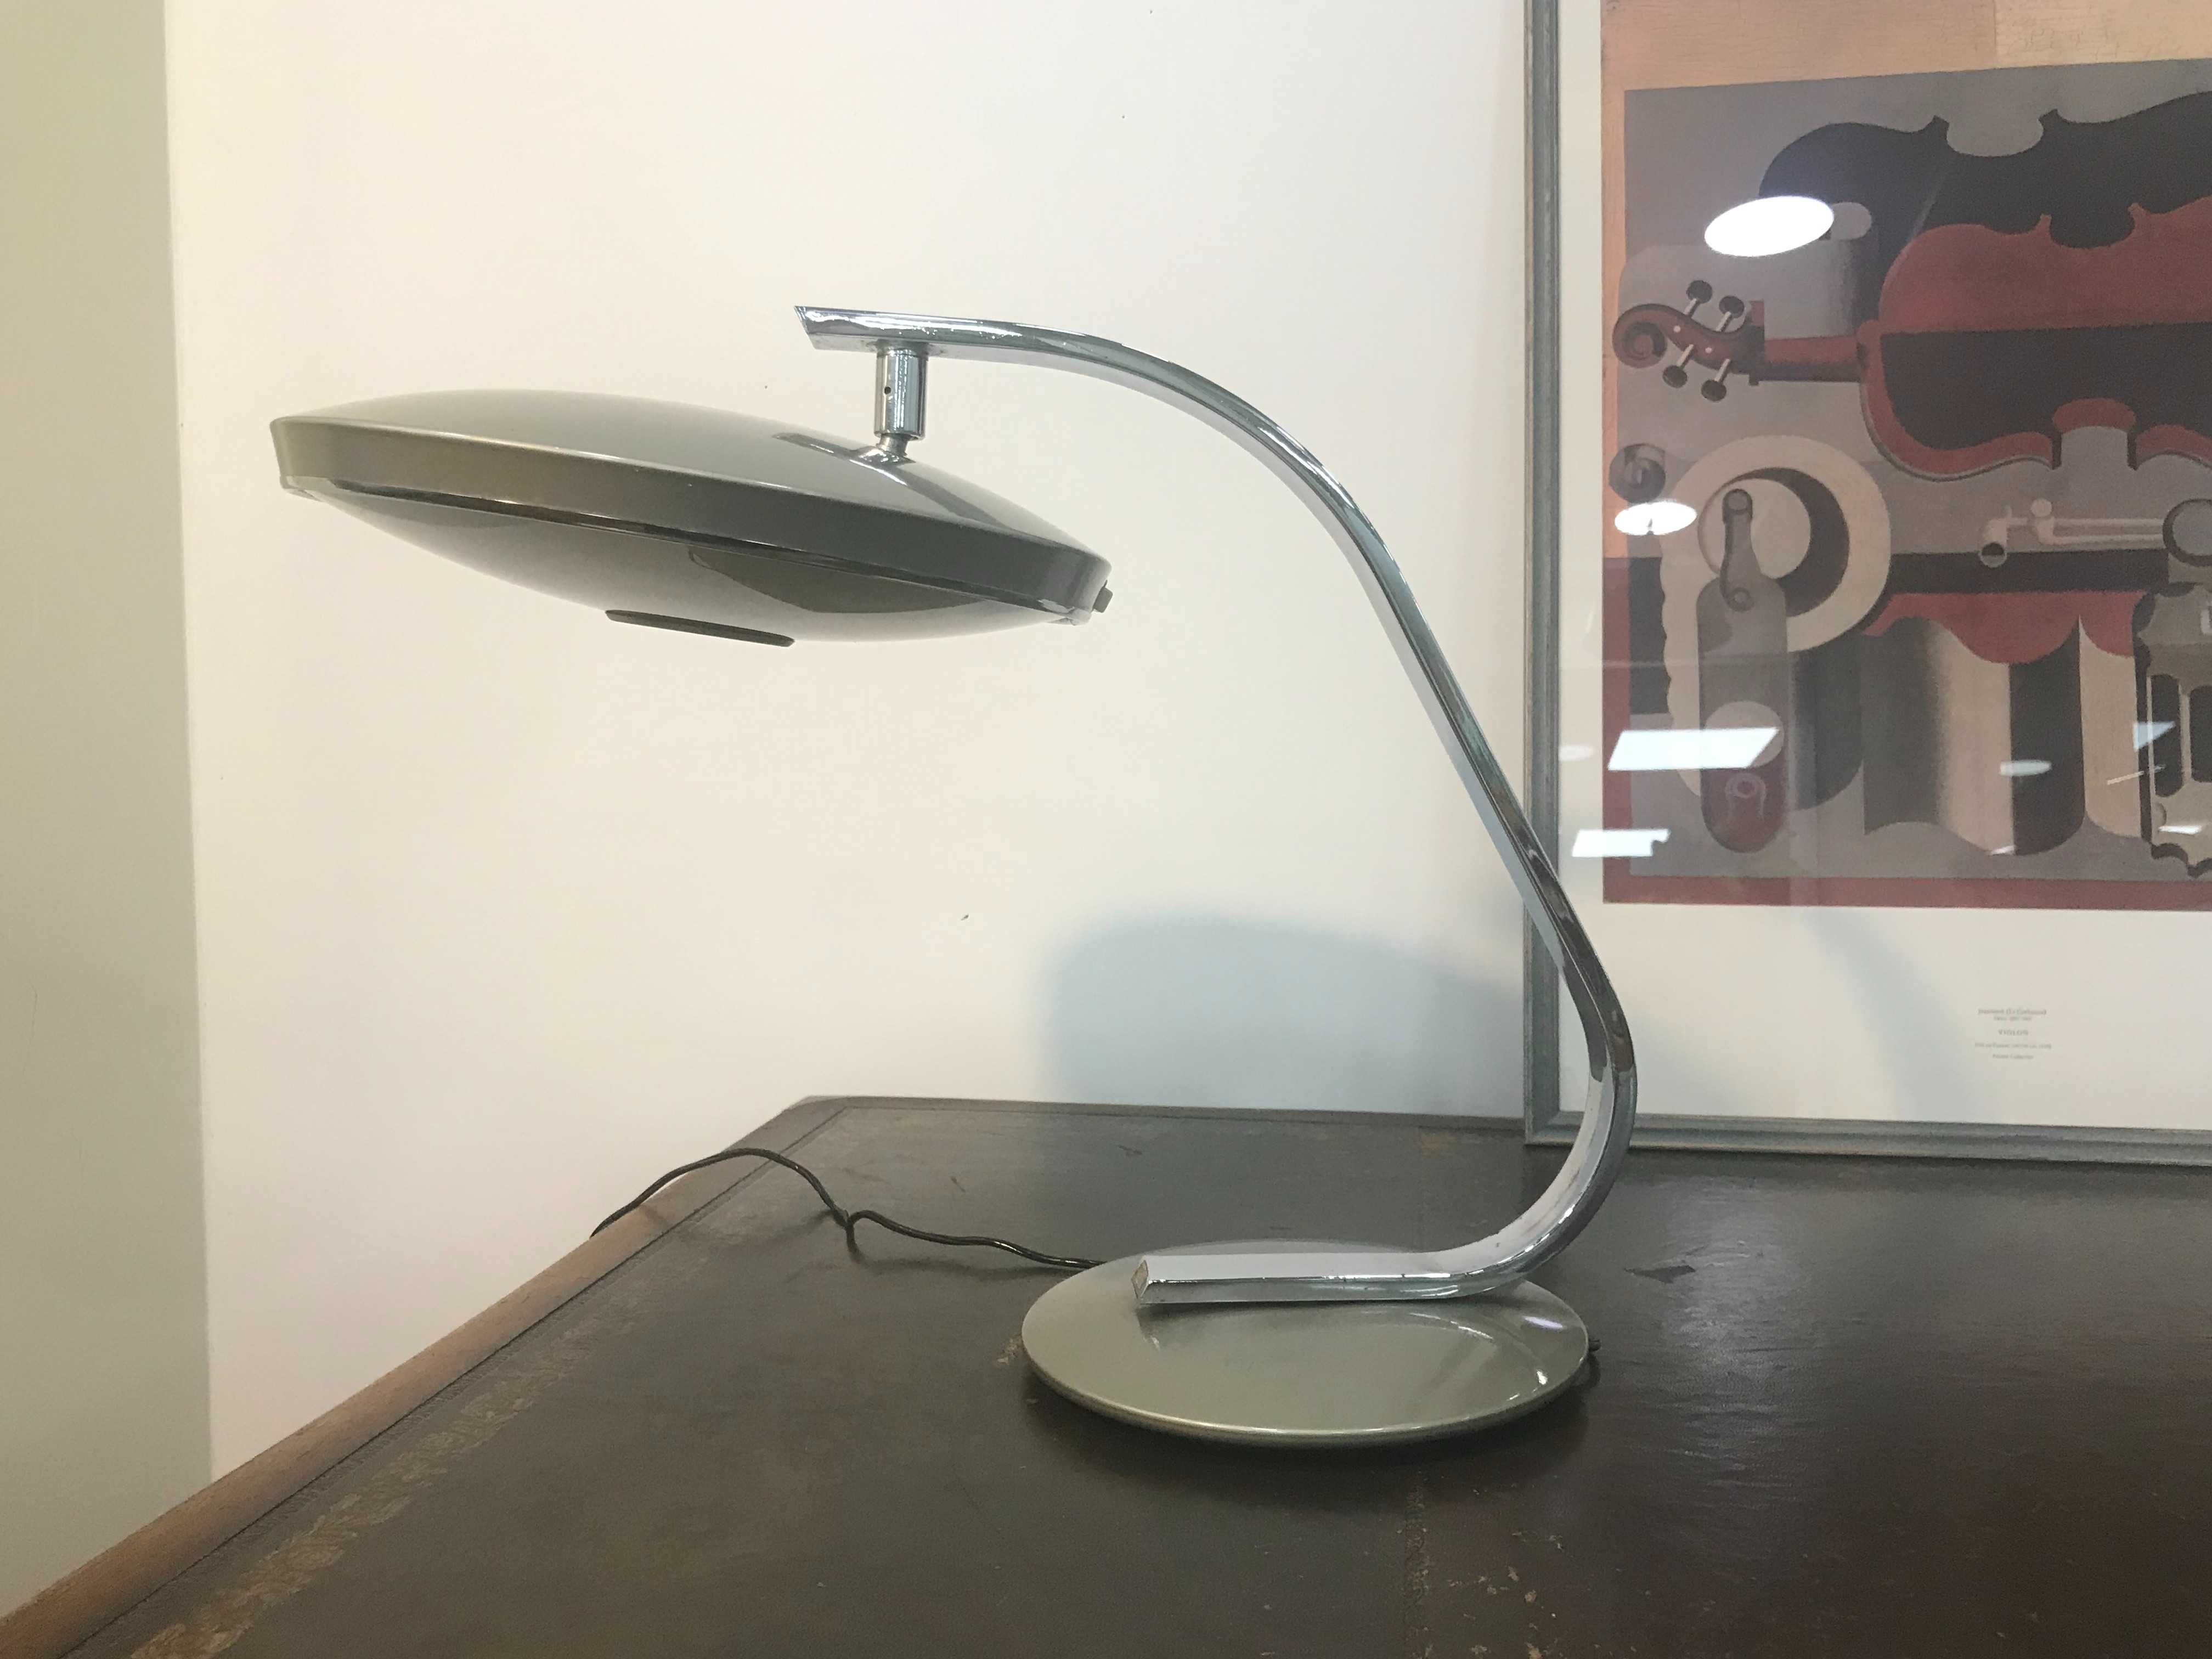 Лампа за бюро FASE 520 C, design by Luis Perez de la Oliva, 1967 г.